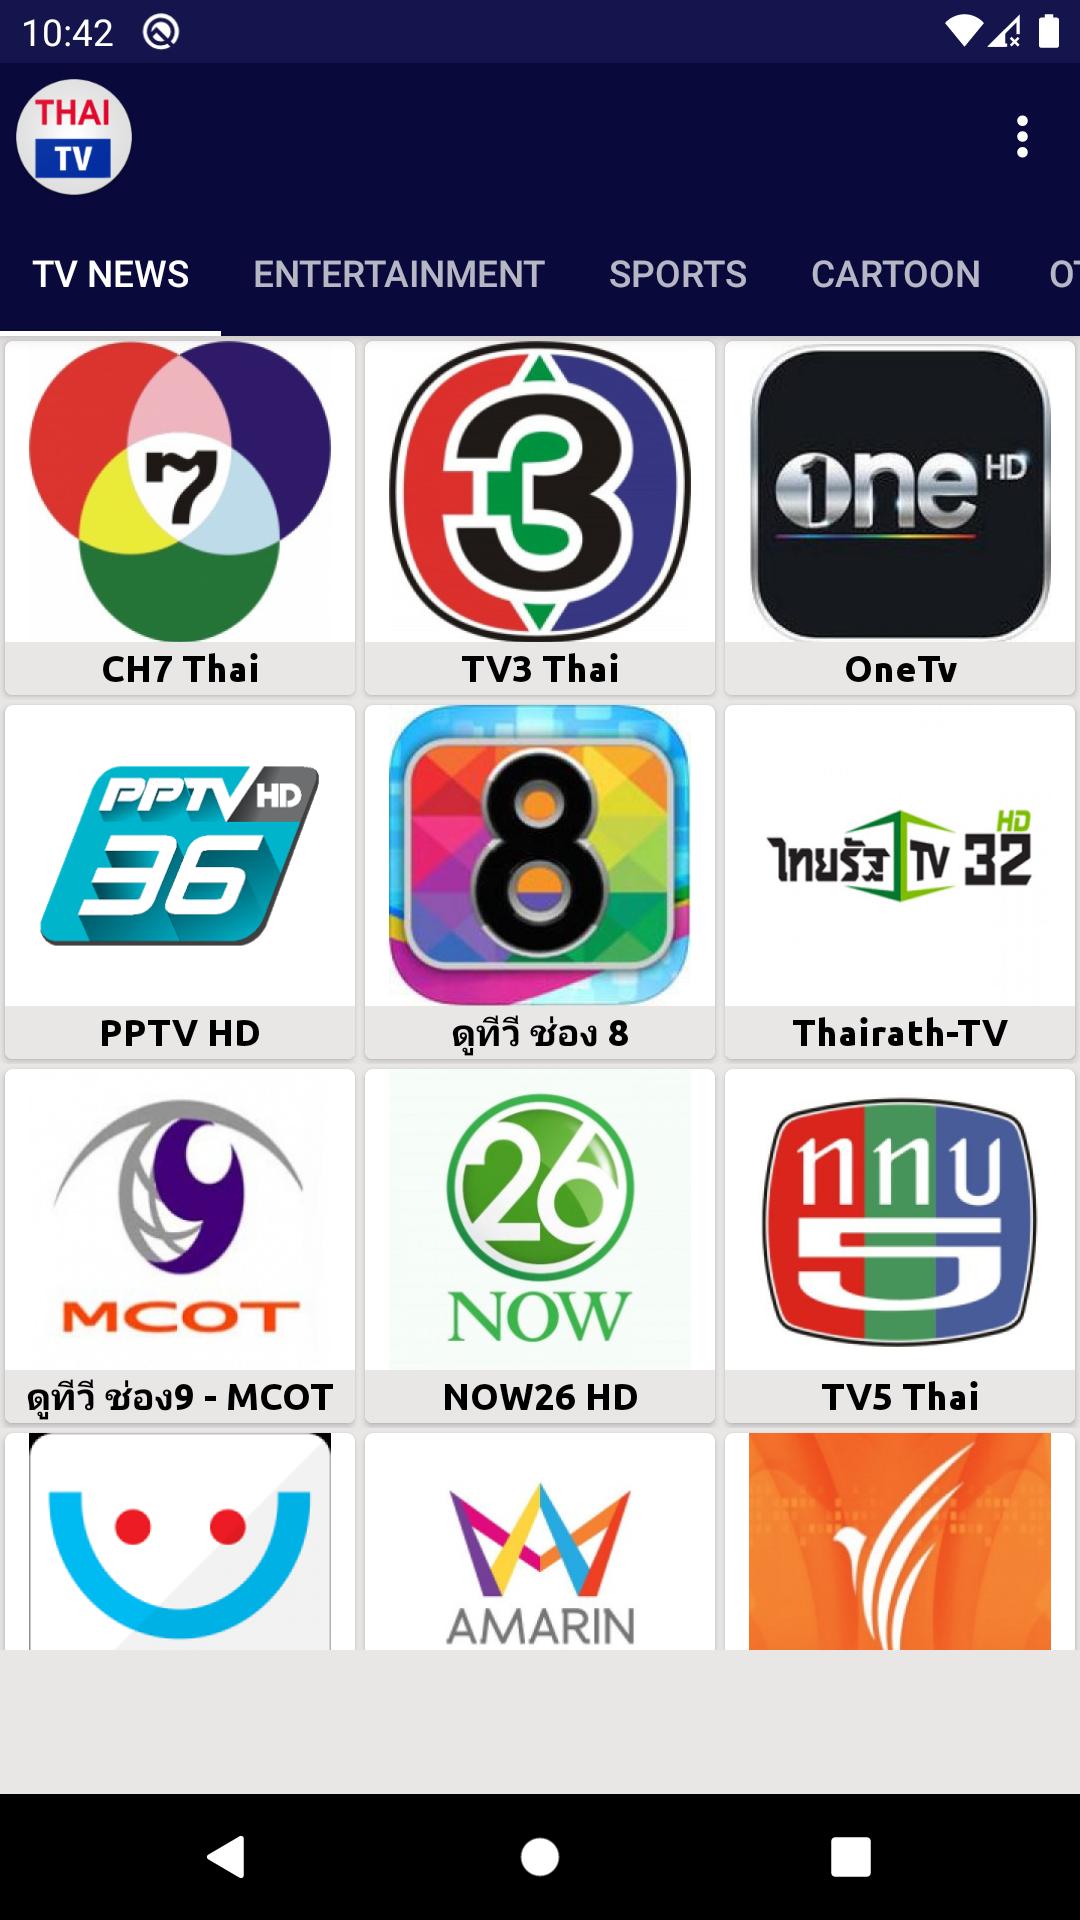 Online 32 tv bit thai Download Windows